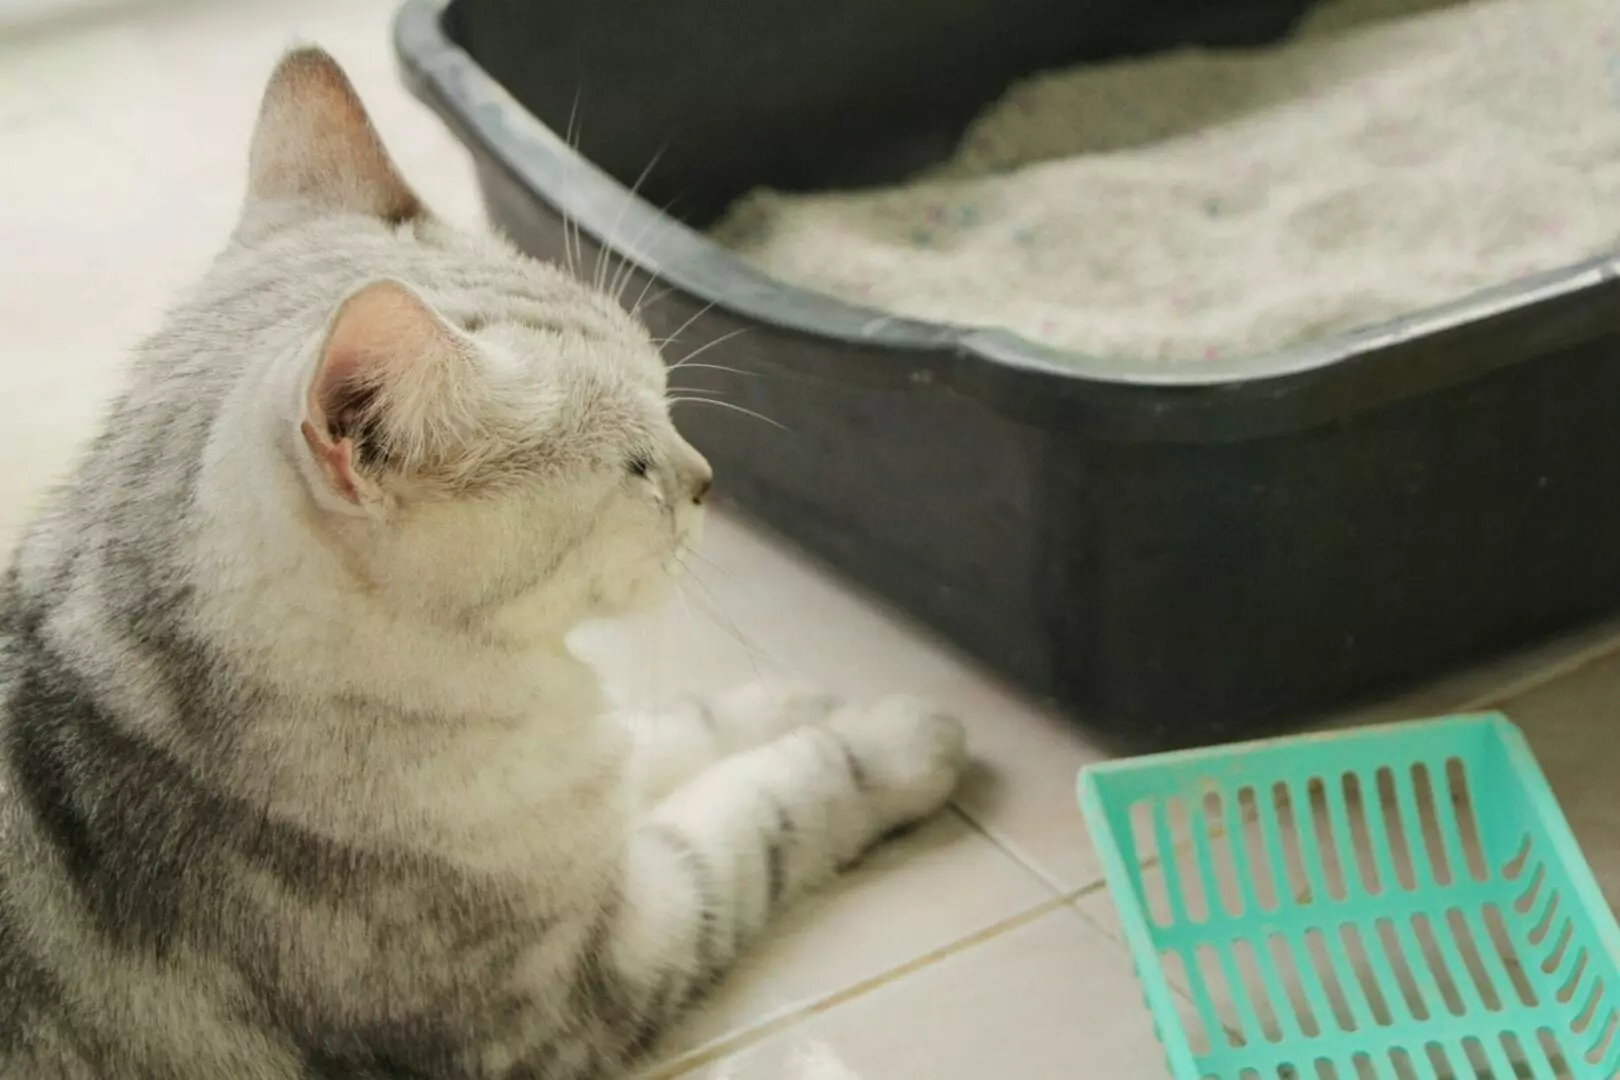 Por que os gatos fazem cocô na banheira e como evitá-lo